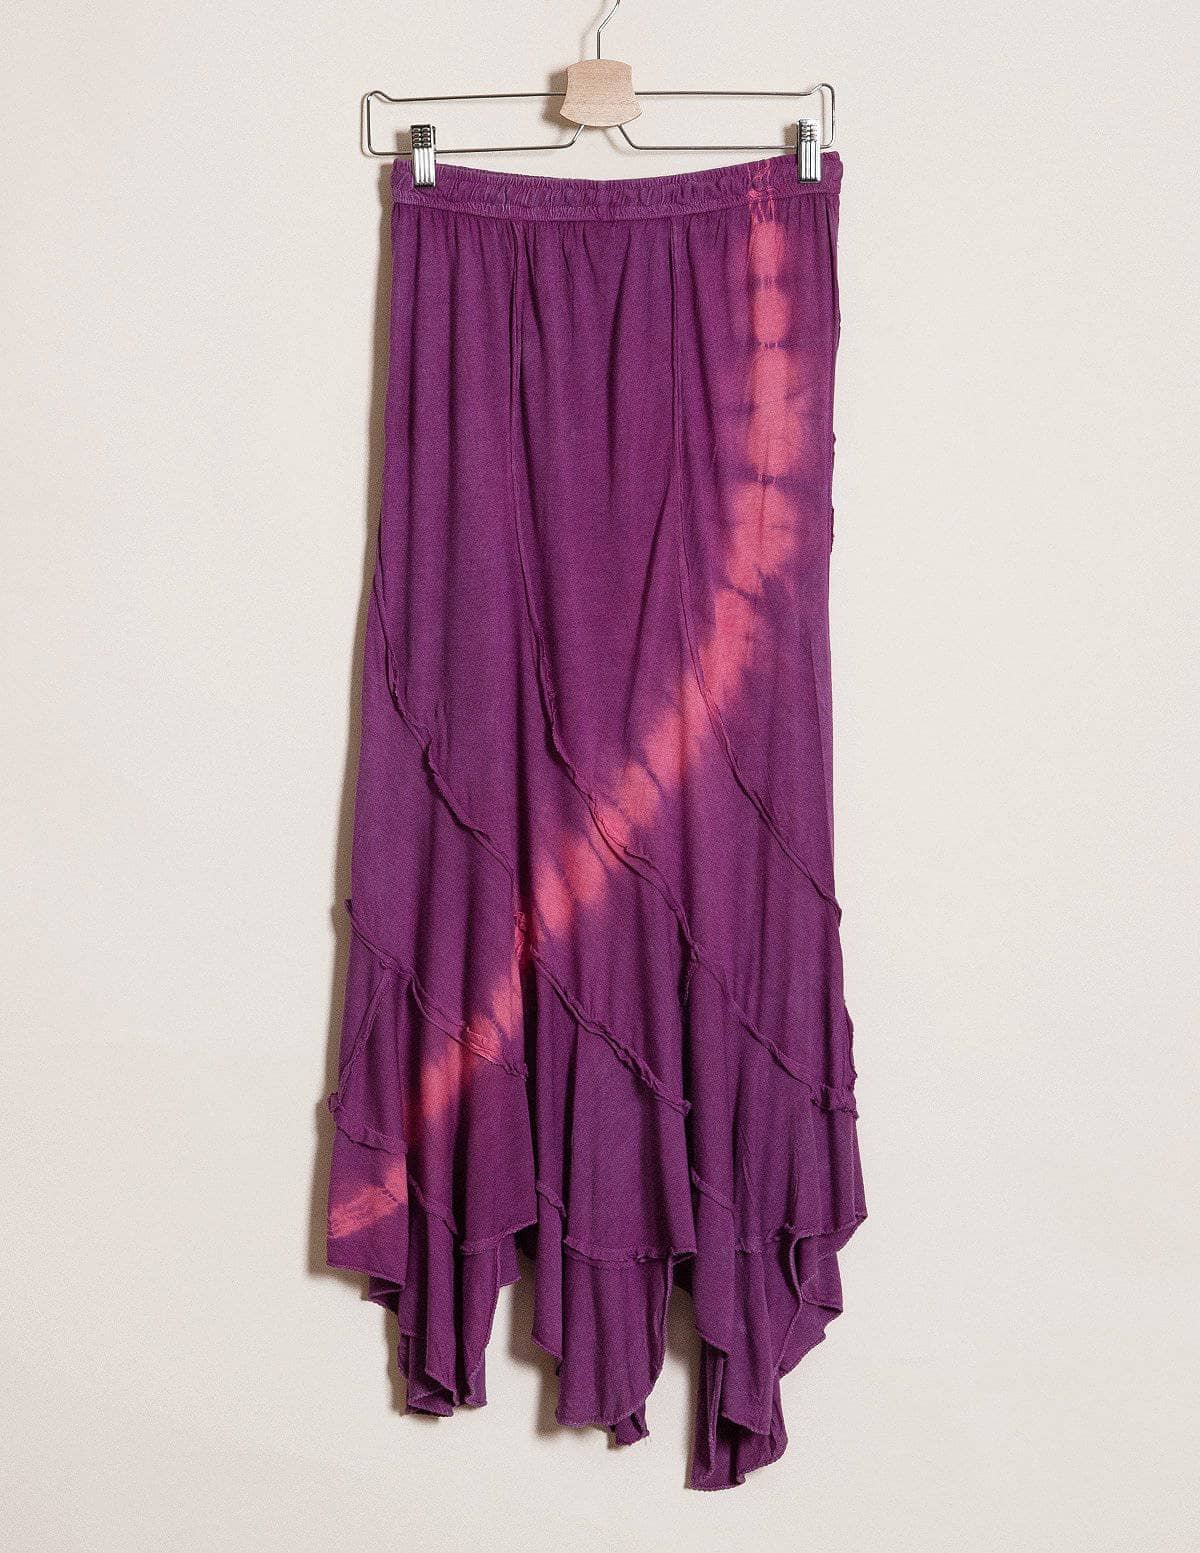 Tie-Dye Skirt - Purple - As-Is-Clearance